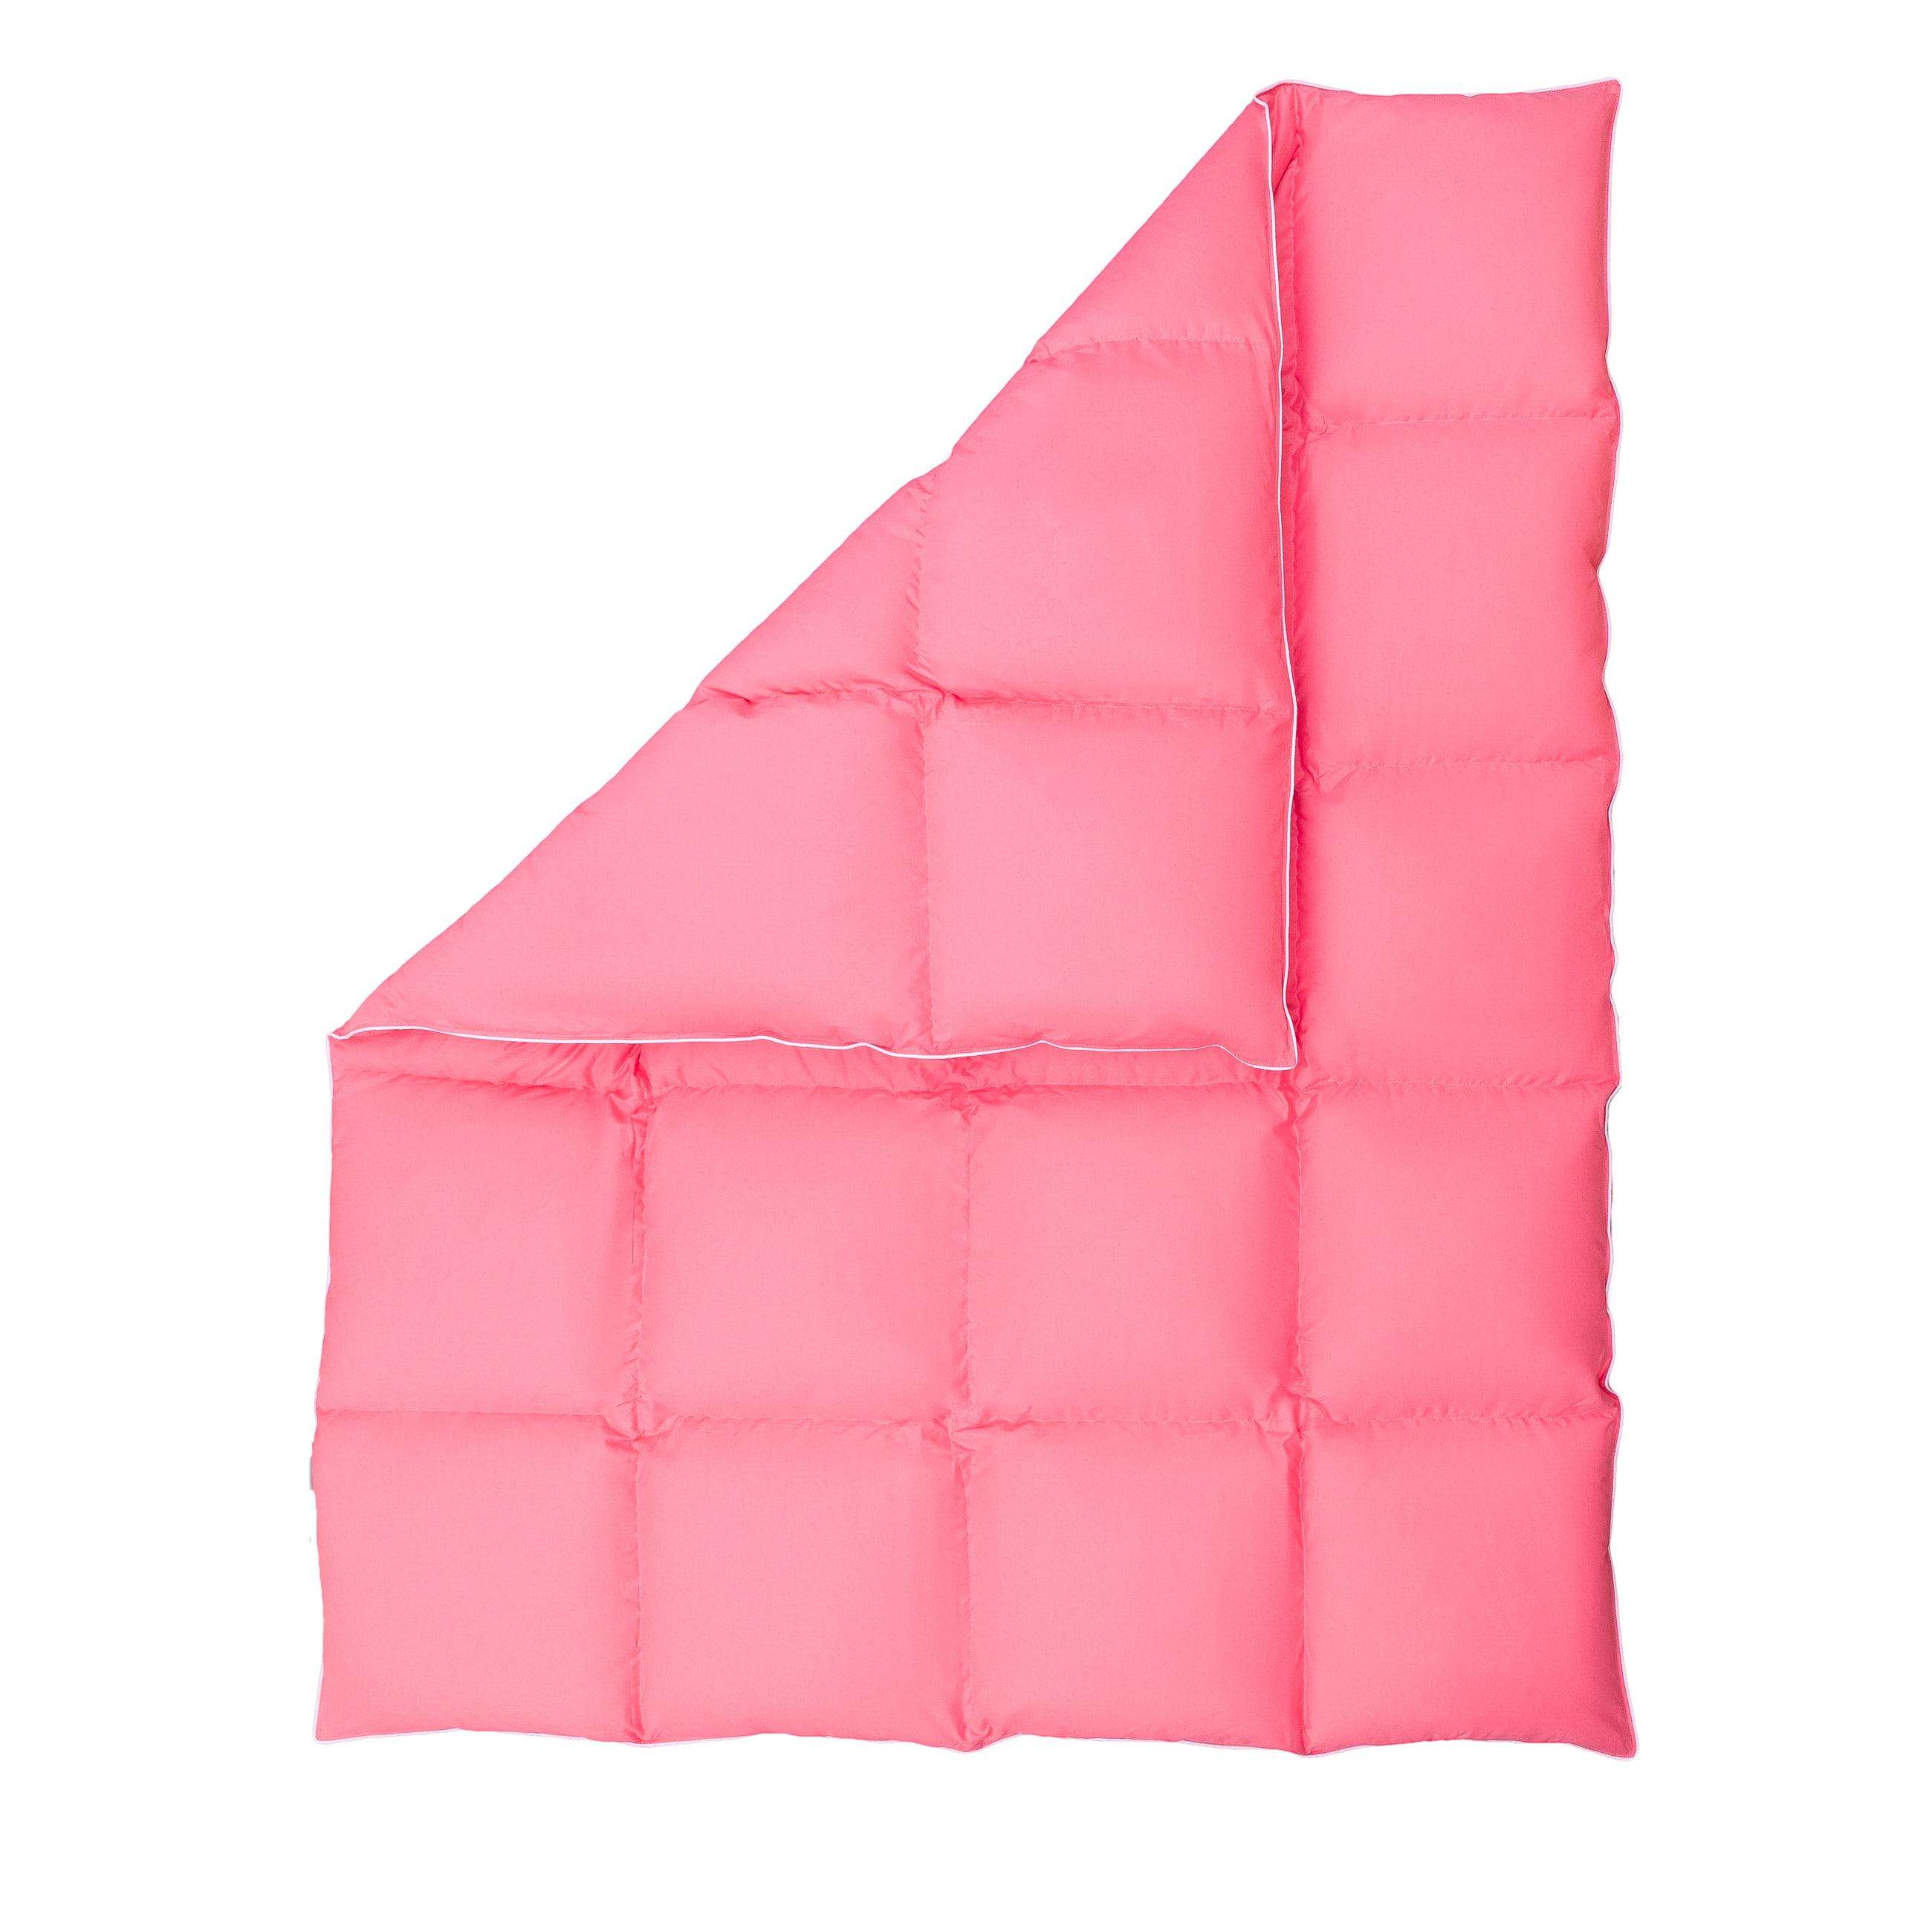 Zdjęcie packshot różowej kołdry puchowej